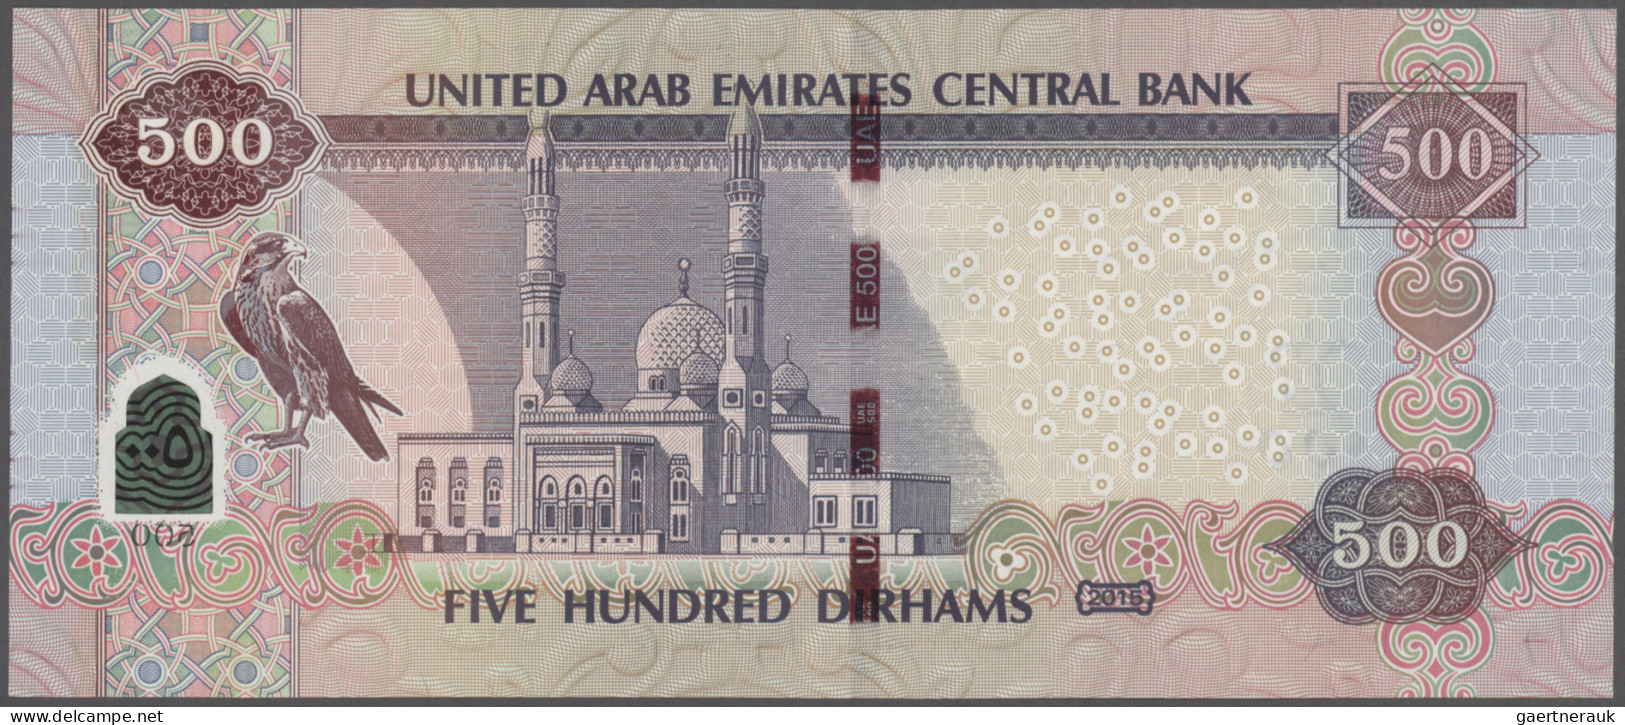 United Arab Emirates: United Arab Emirates Central Bank 500 Dirhams 2015 (AH1436 - Ver. Arab. Emirate